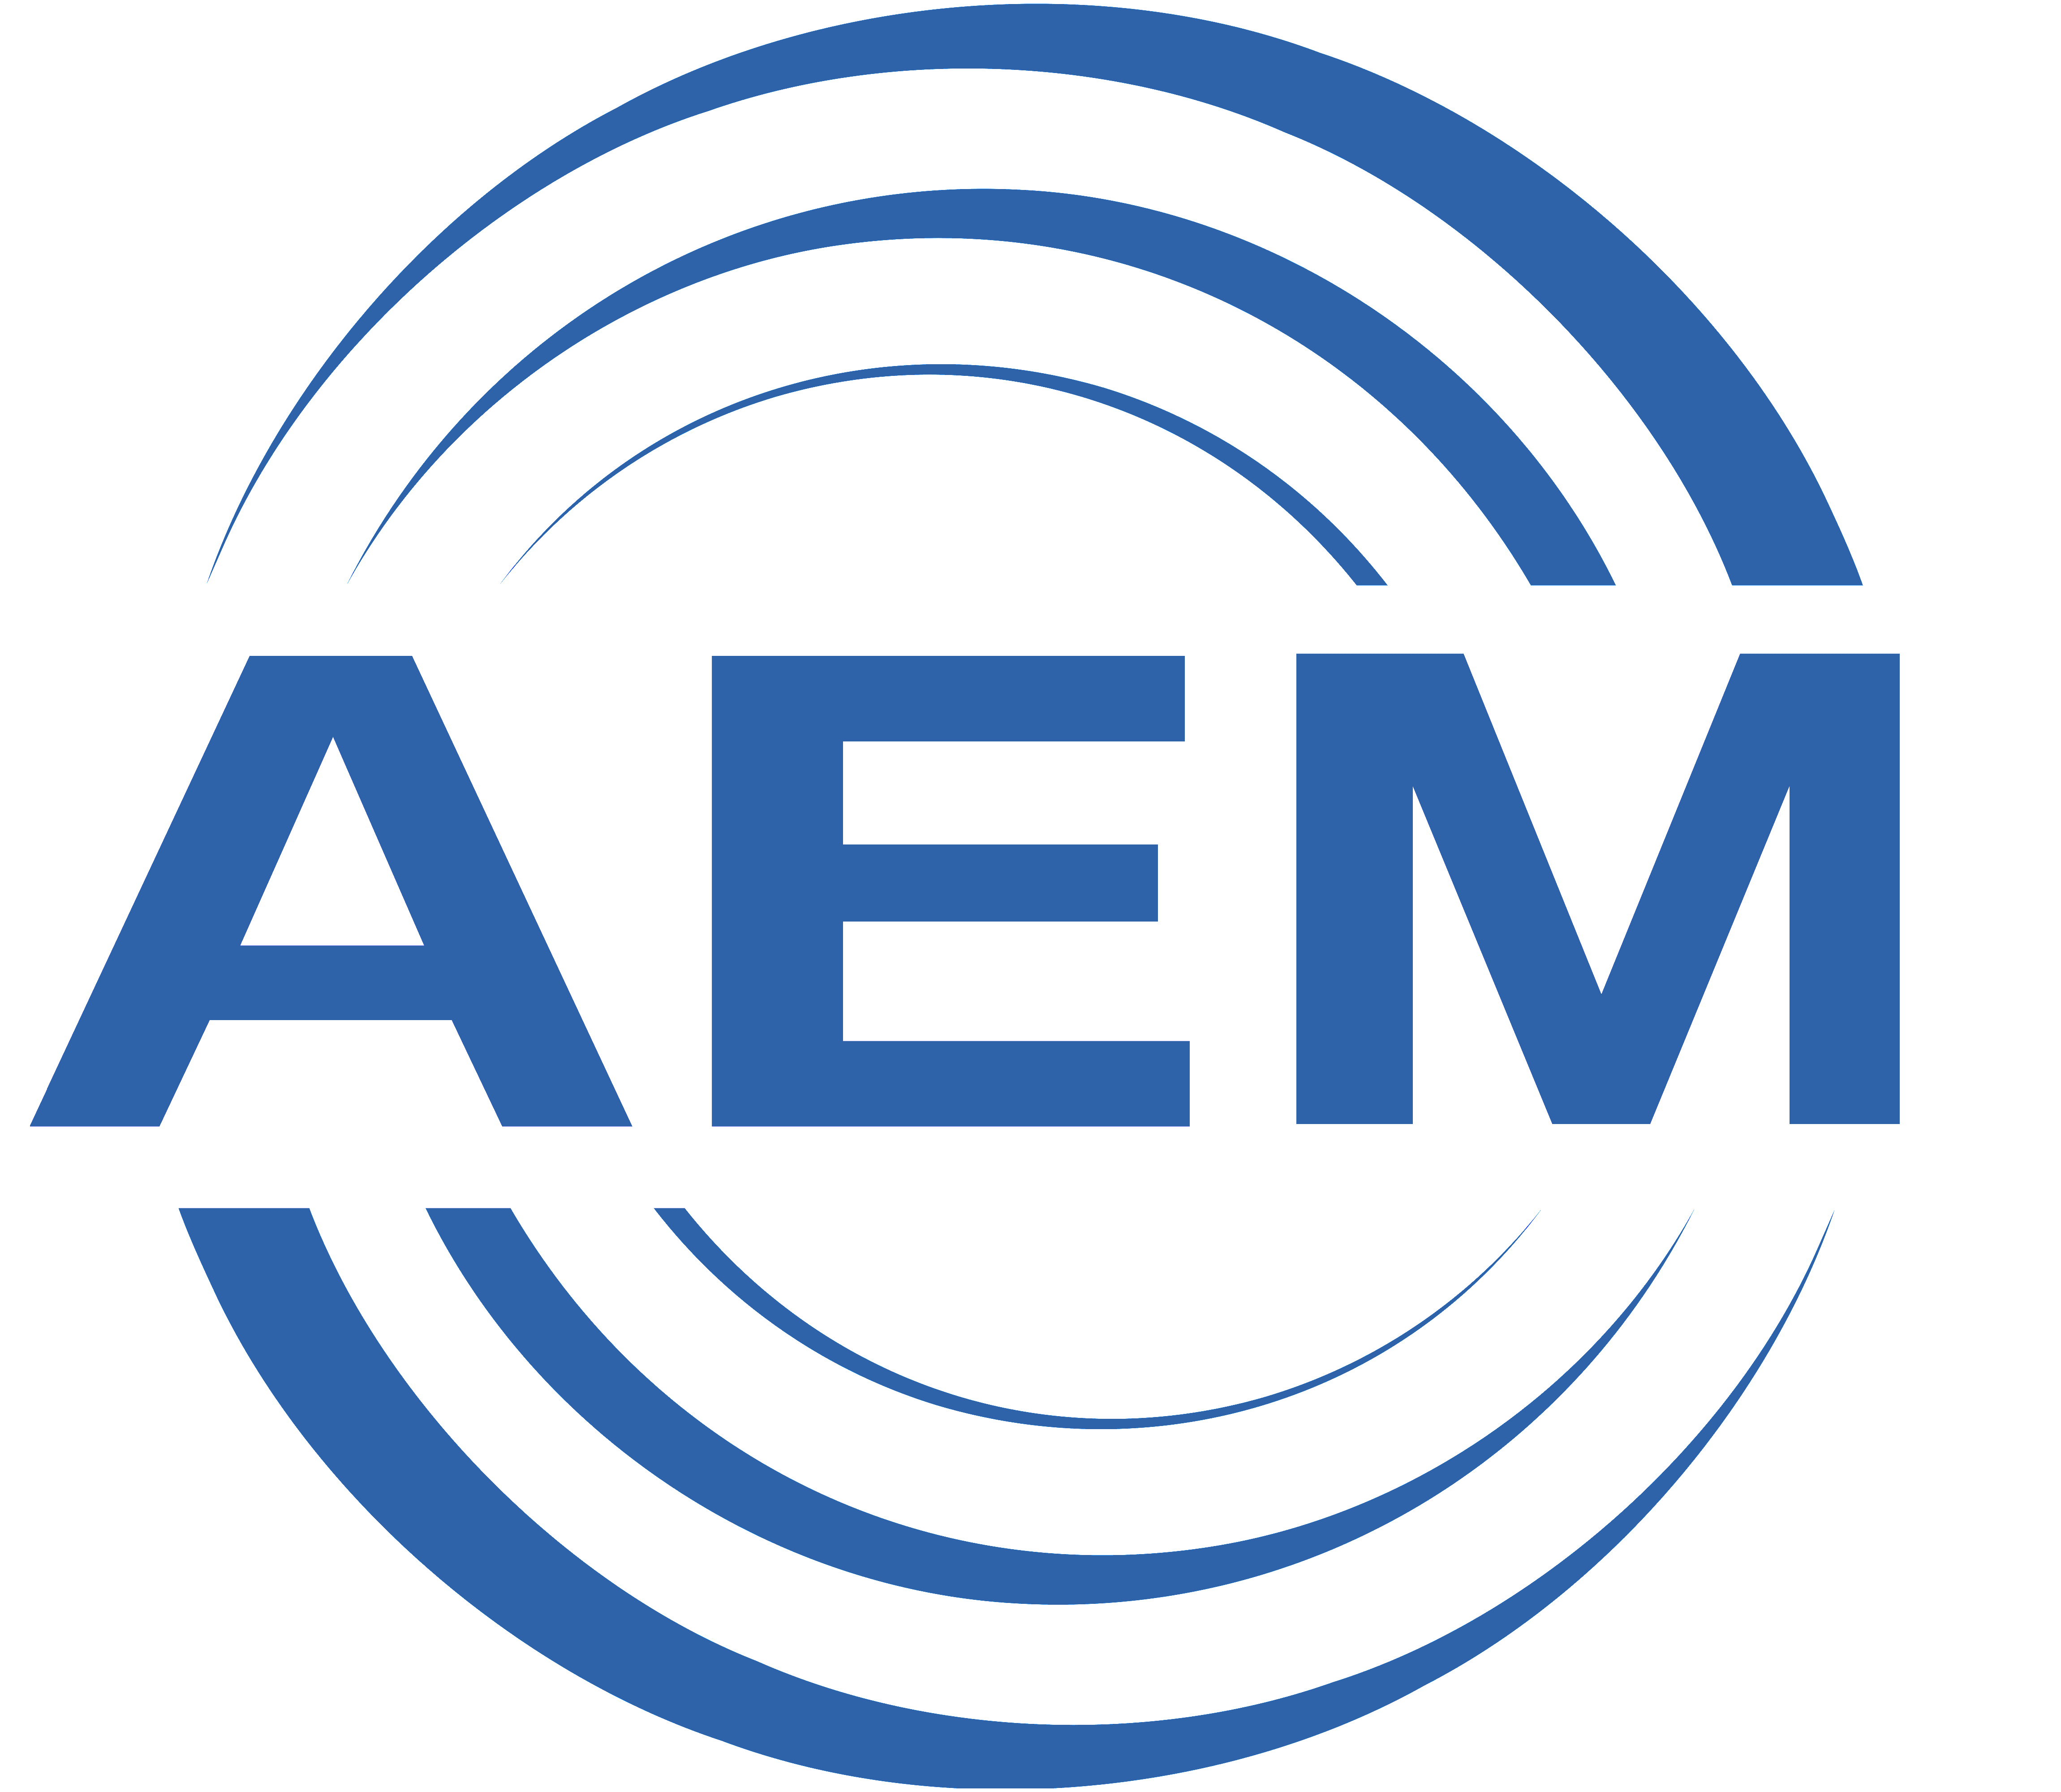 AEM- Anhaltische Elektromotorenwerk Dessau GmbH